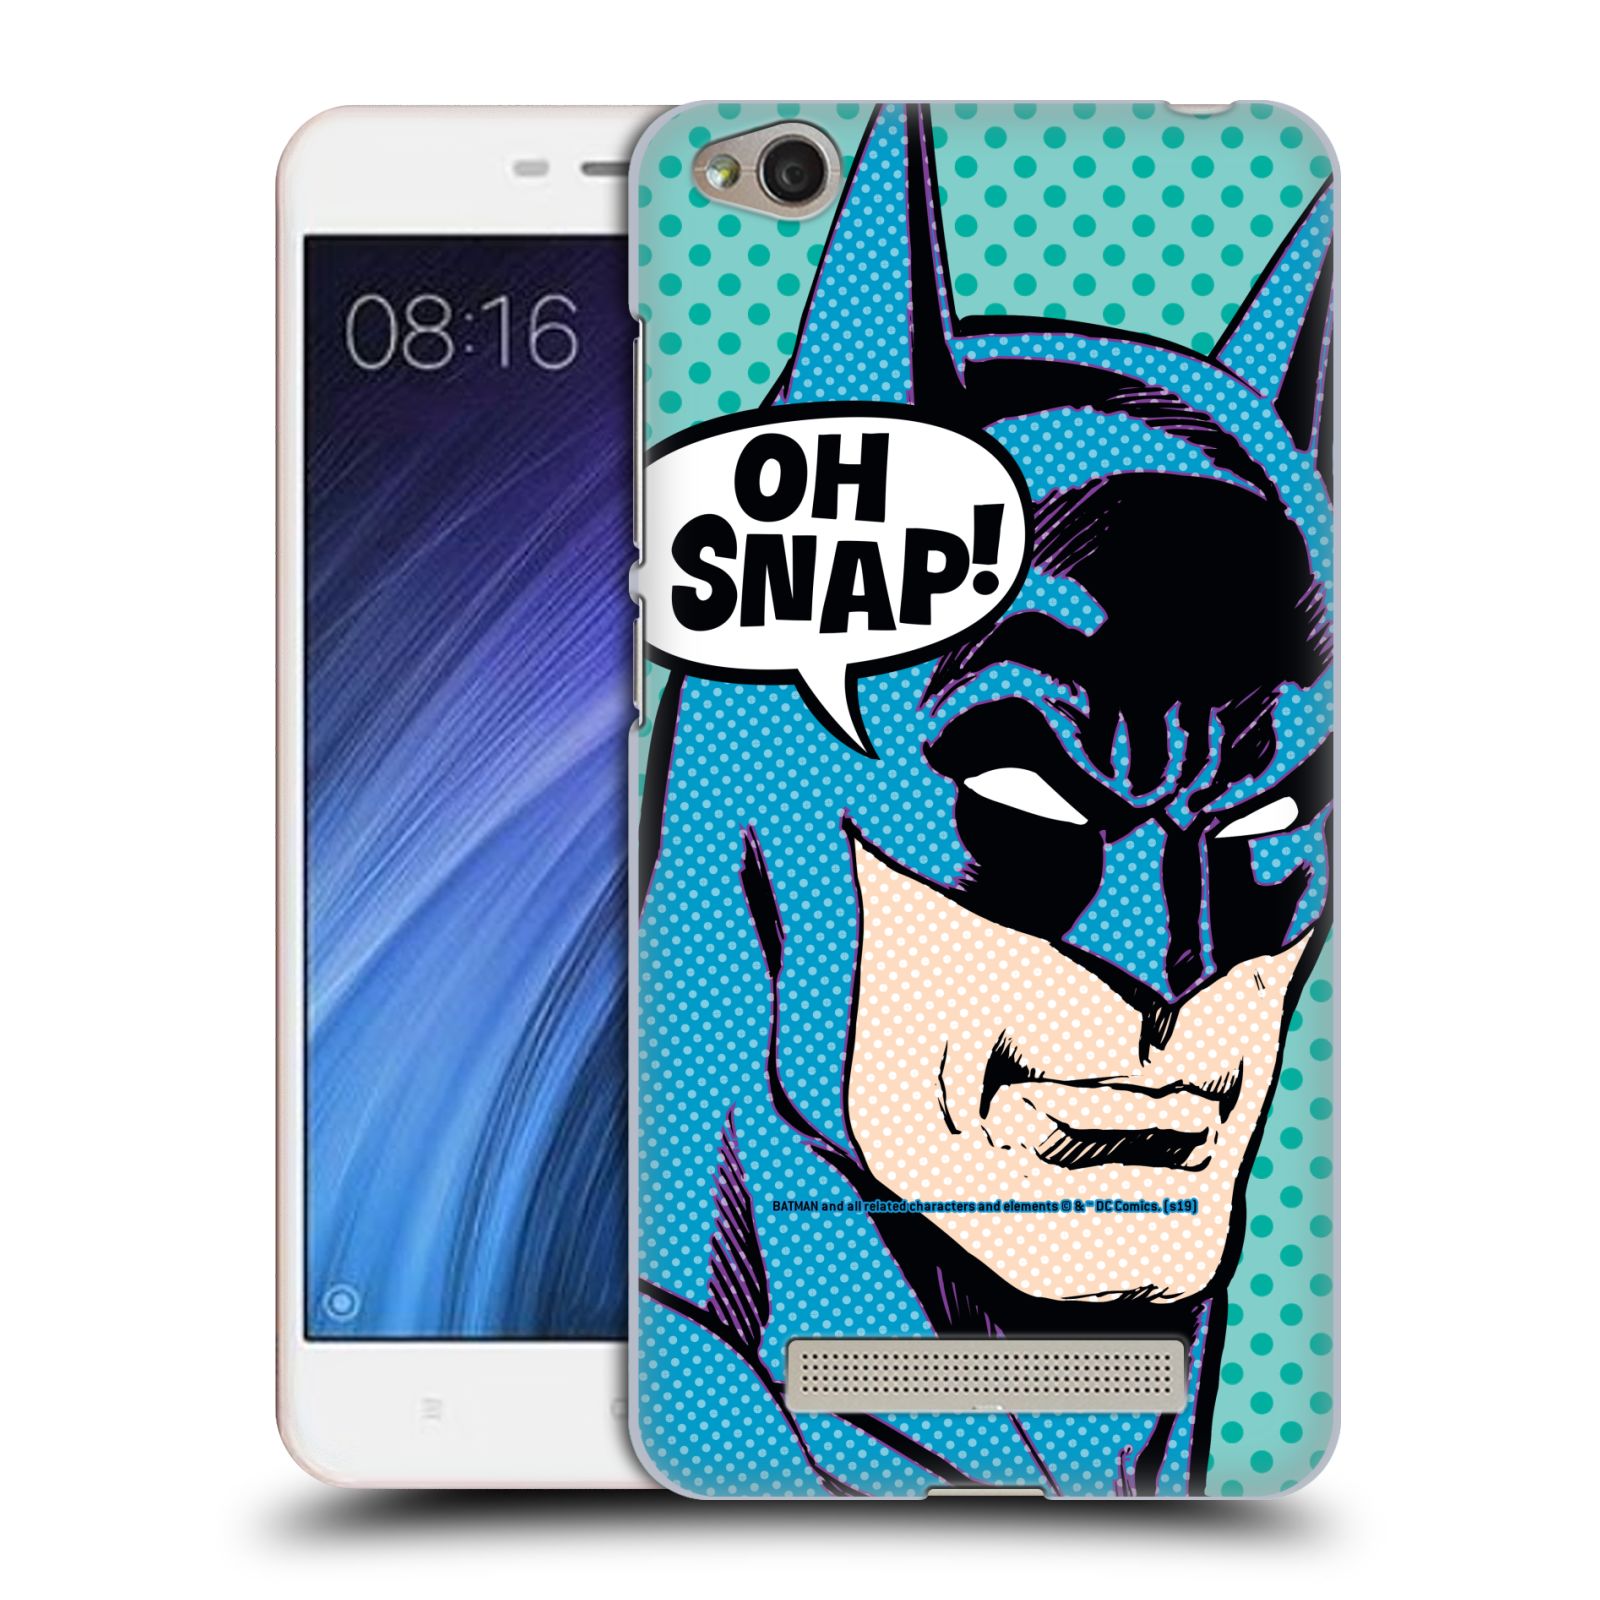 Pouzdro na mobil Xiaomi Redmi 4a - HEAD CASE - DC komix Batman Pop Art tvář